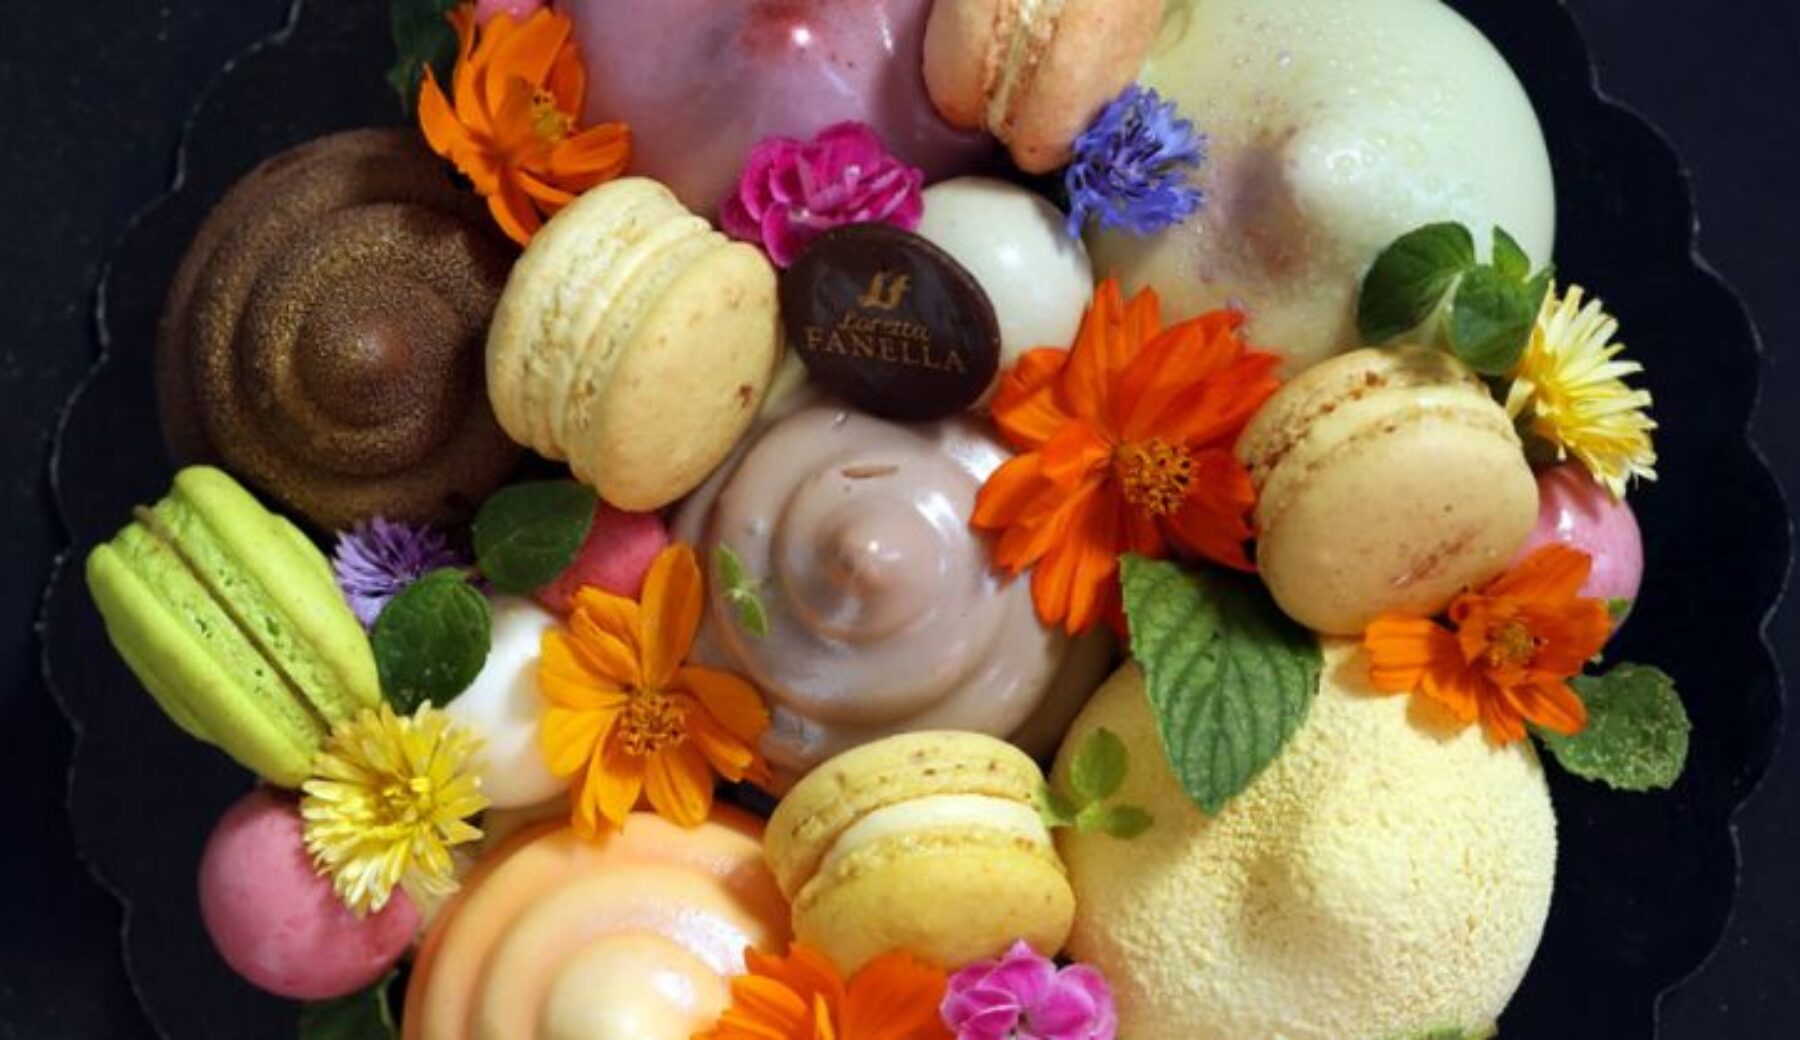 La ricetta della torta Universo, composizione di dolci e fiori di Loretta Fanella